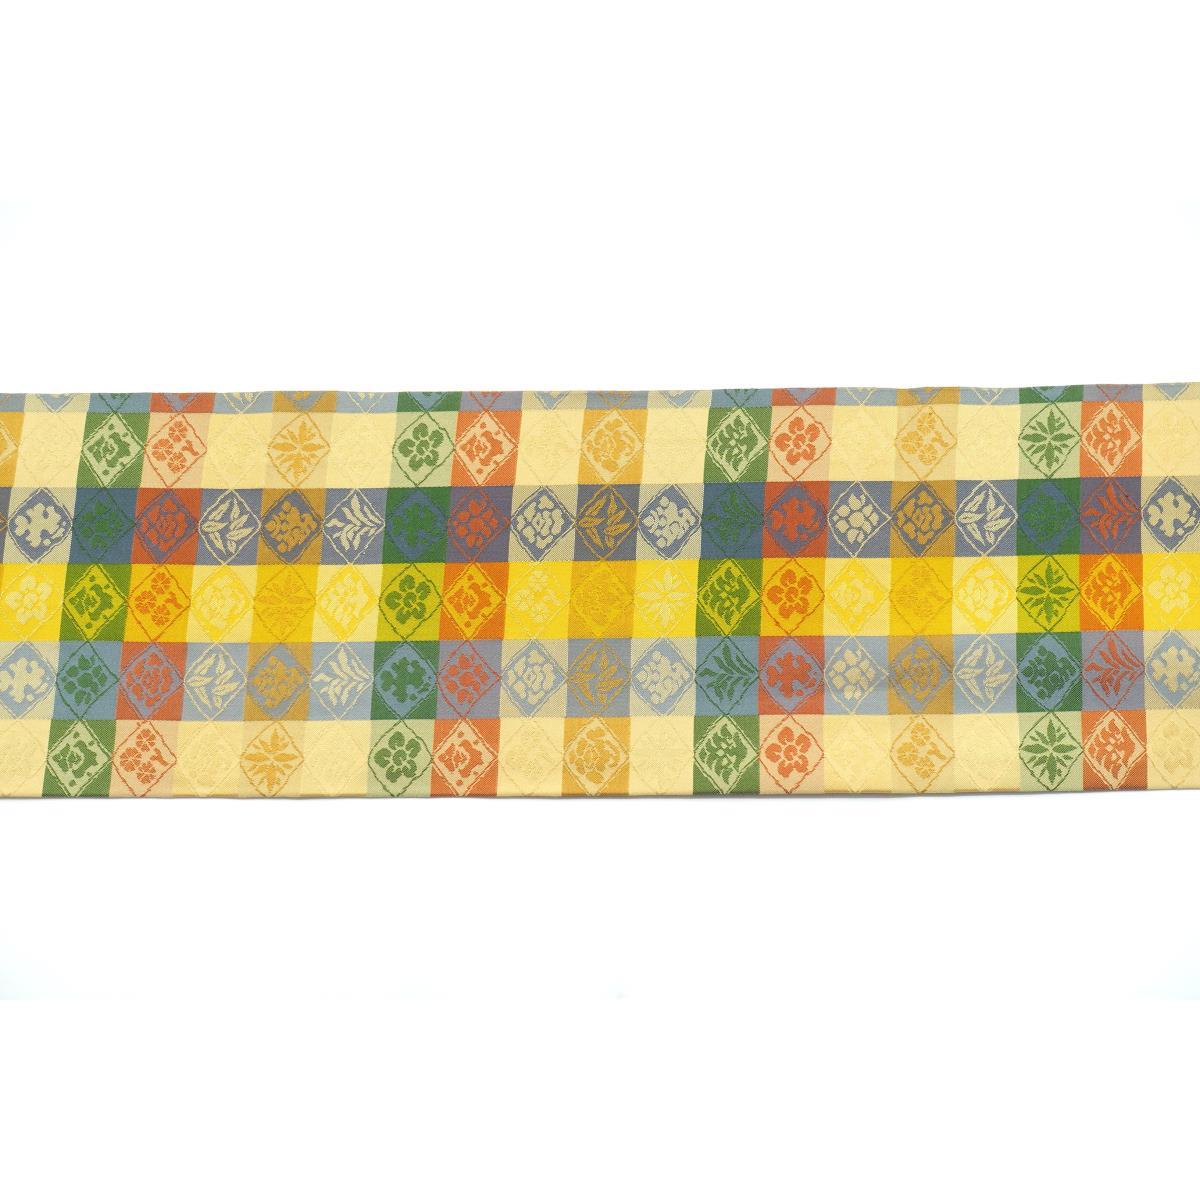 [Unused items] Nagoya obi all-over pattern